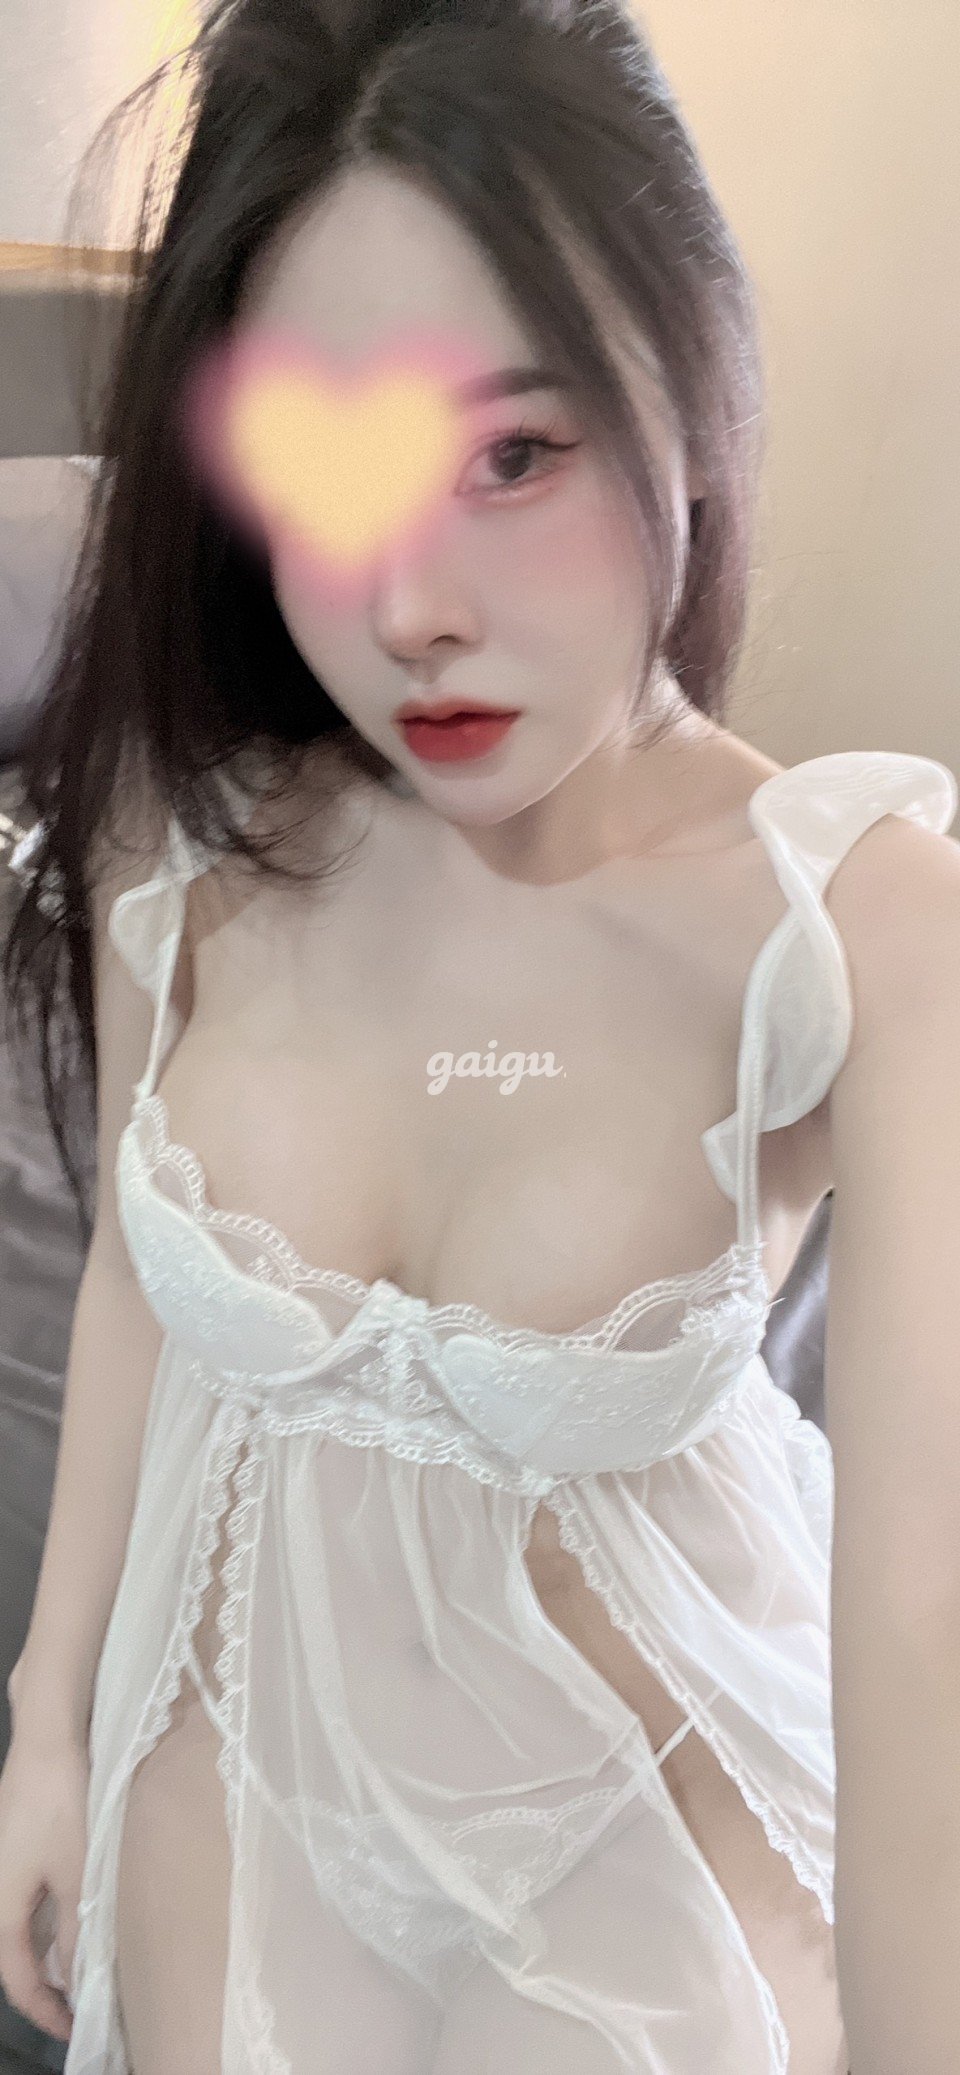 880336 - Hot Girl QUỲNH LY Mặt Xinh Gợi Tình Body Đẹp Nhìn Rất Sexy